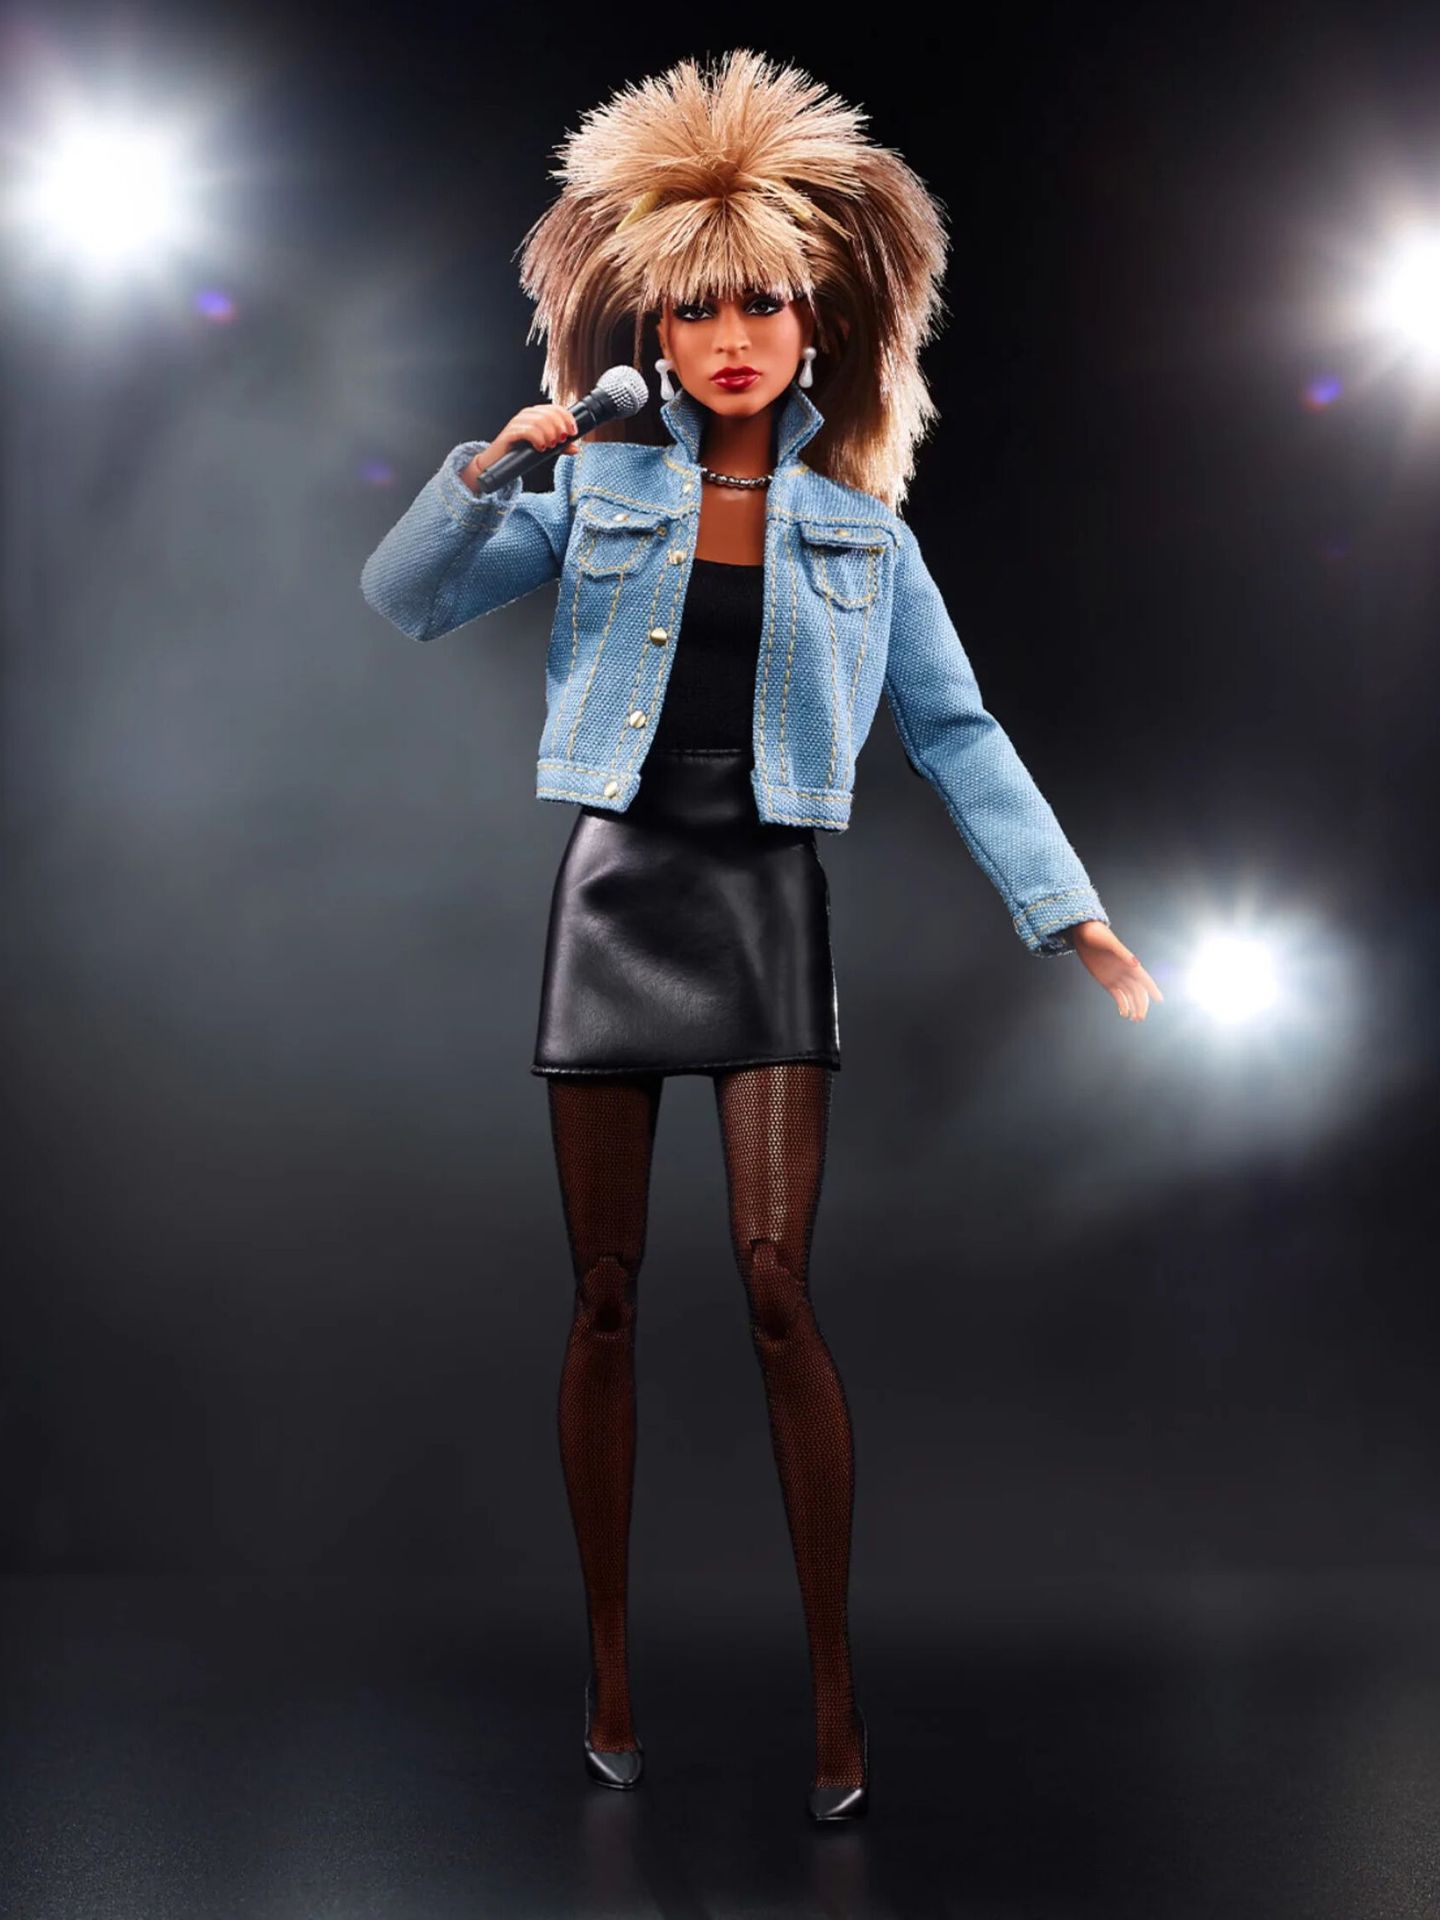 Fotografía cedida por Mattel de la muñeca homenaje a la cantante Tina Turner. (EFE/Mattel)